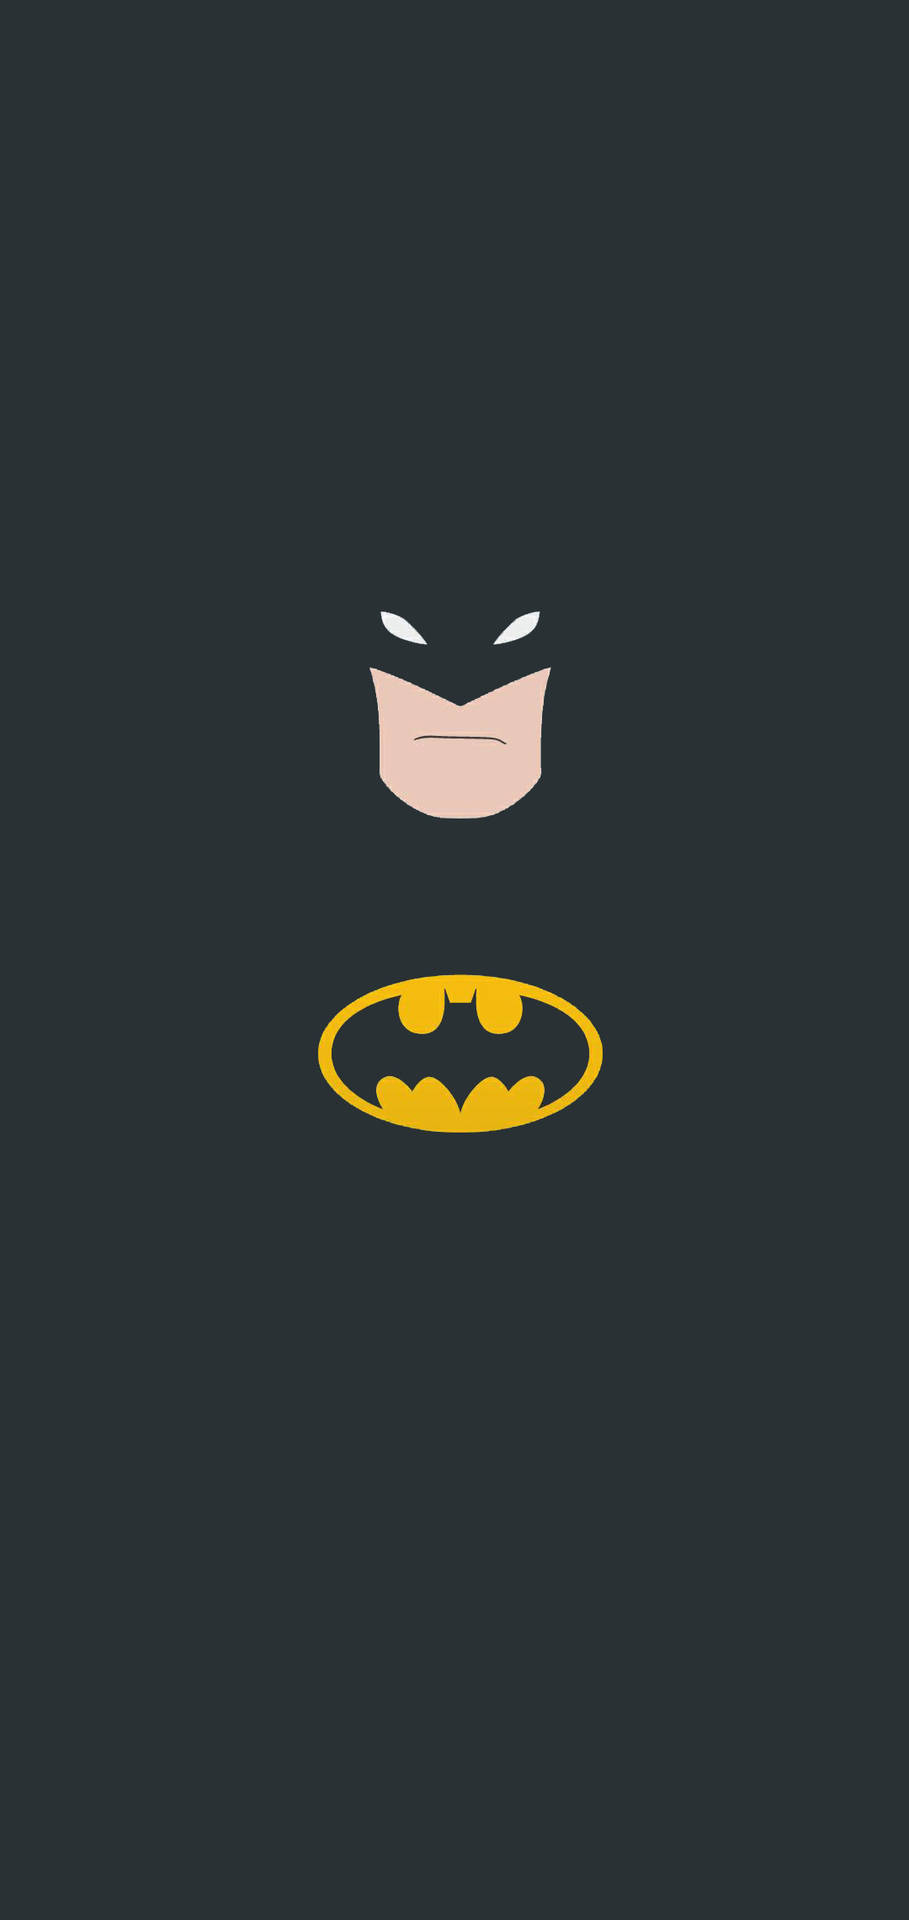 Batman Minimalist Iphone Wallpaper